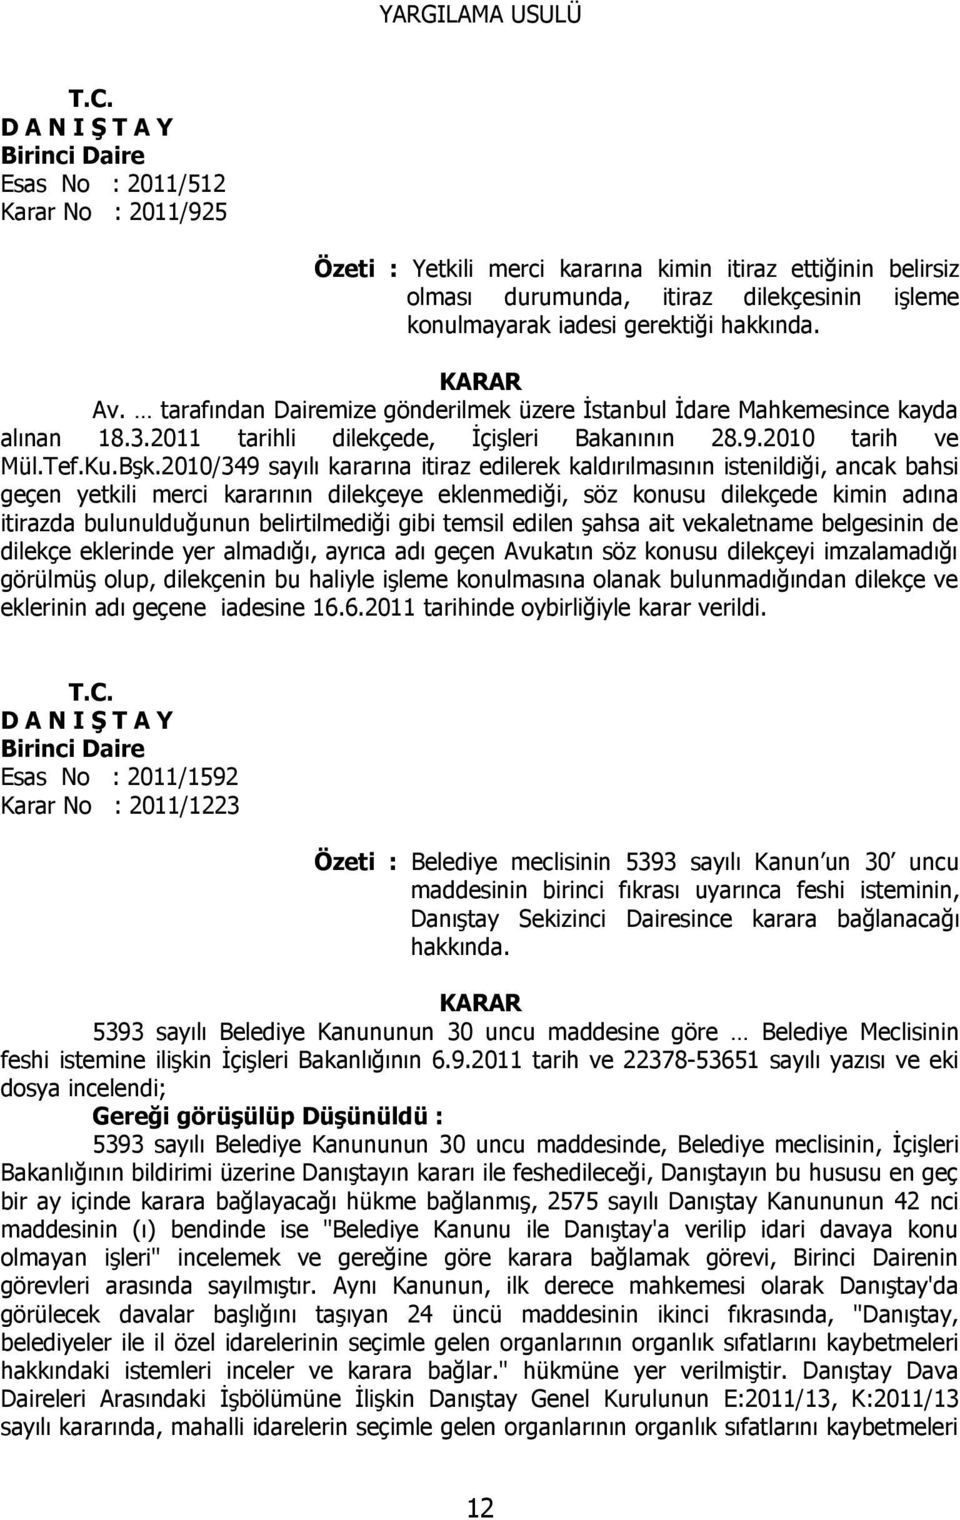 gerektiği hakkında. KARAR Av. tarafından Dairemize gönderilmek üzere İstanbul İdare Mahkemesince kayda alınan 18.3.2011 tarihli dilekçede, İçişleri Bakanının 28.9.2010 tarih ve Mül.Tef.Ku.Bşk.